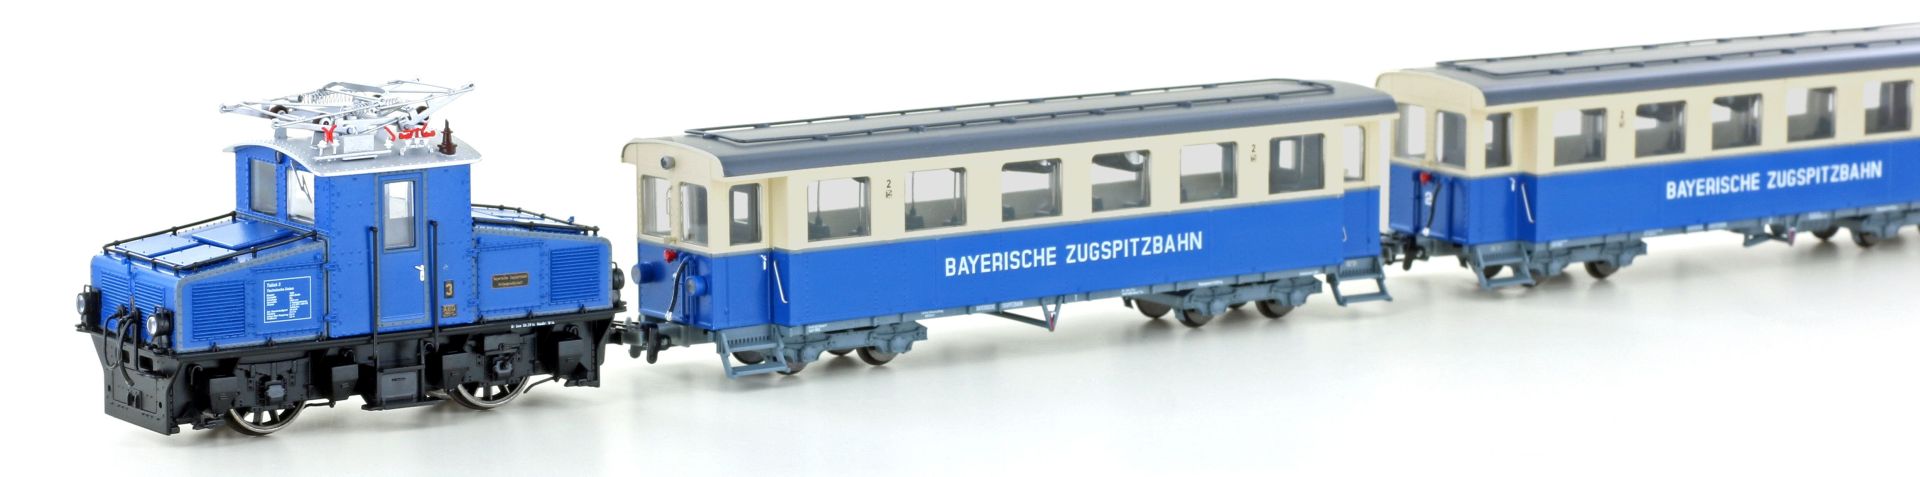 Hobbytrain H43105-S - Zugset der Zugspitzbahn, AEG Tallok und 2 Wagen, Ep.V-VI, H0m, DC-Sound